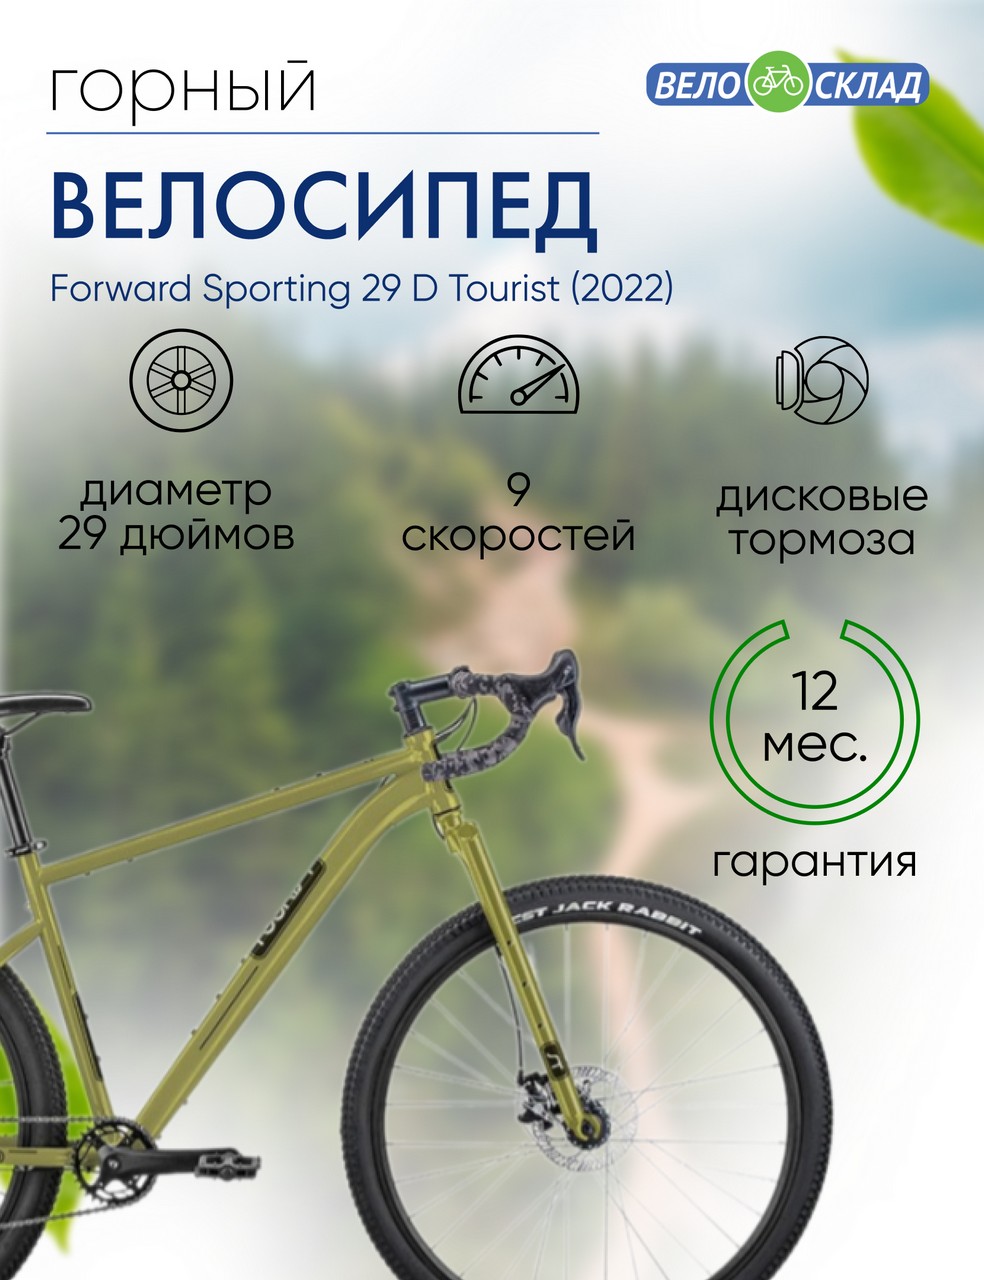 Горный велосипед Forward Sporting 29 D Tourist, год 2022, цвет Зеленый-Черный, ростовка 17